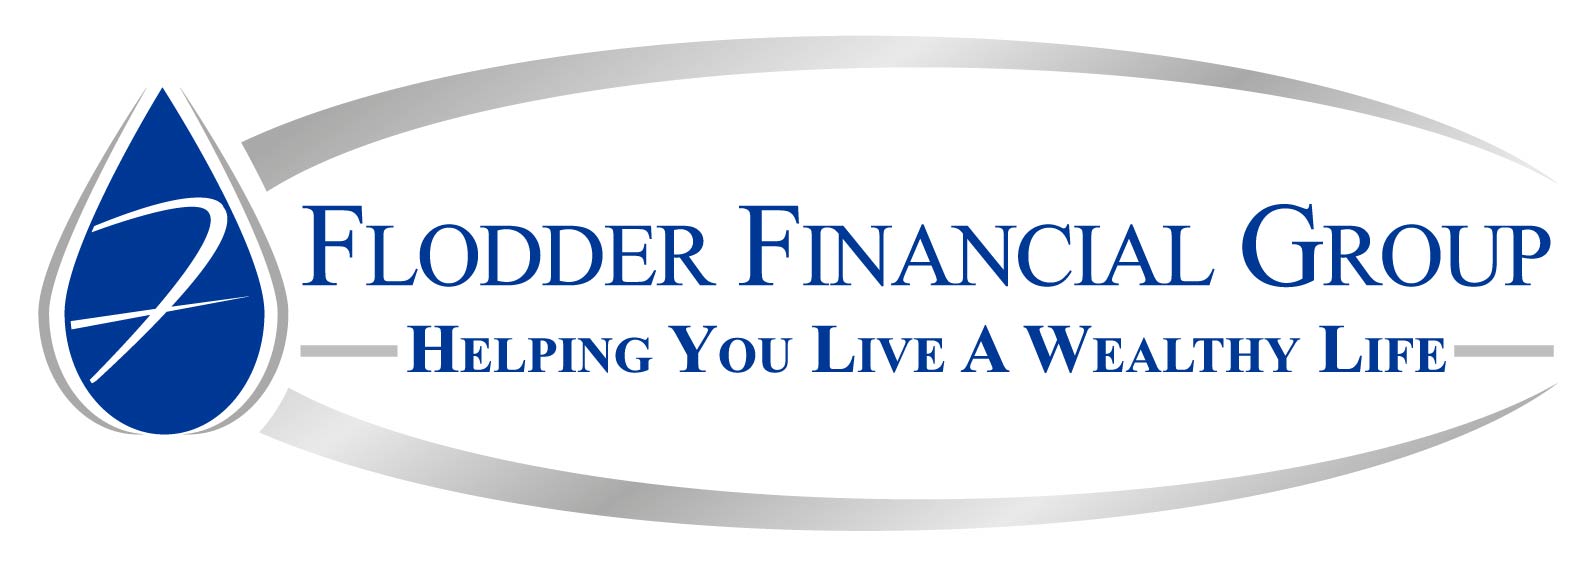 Flodder Financial Group